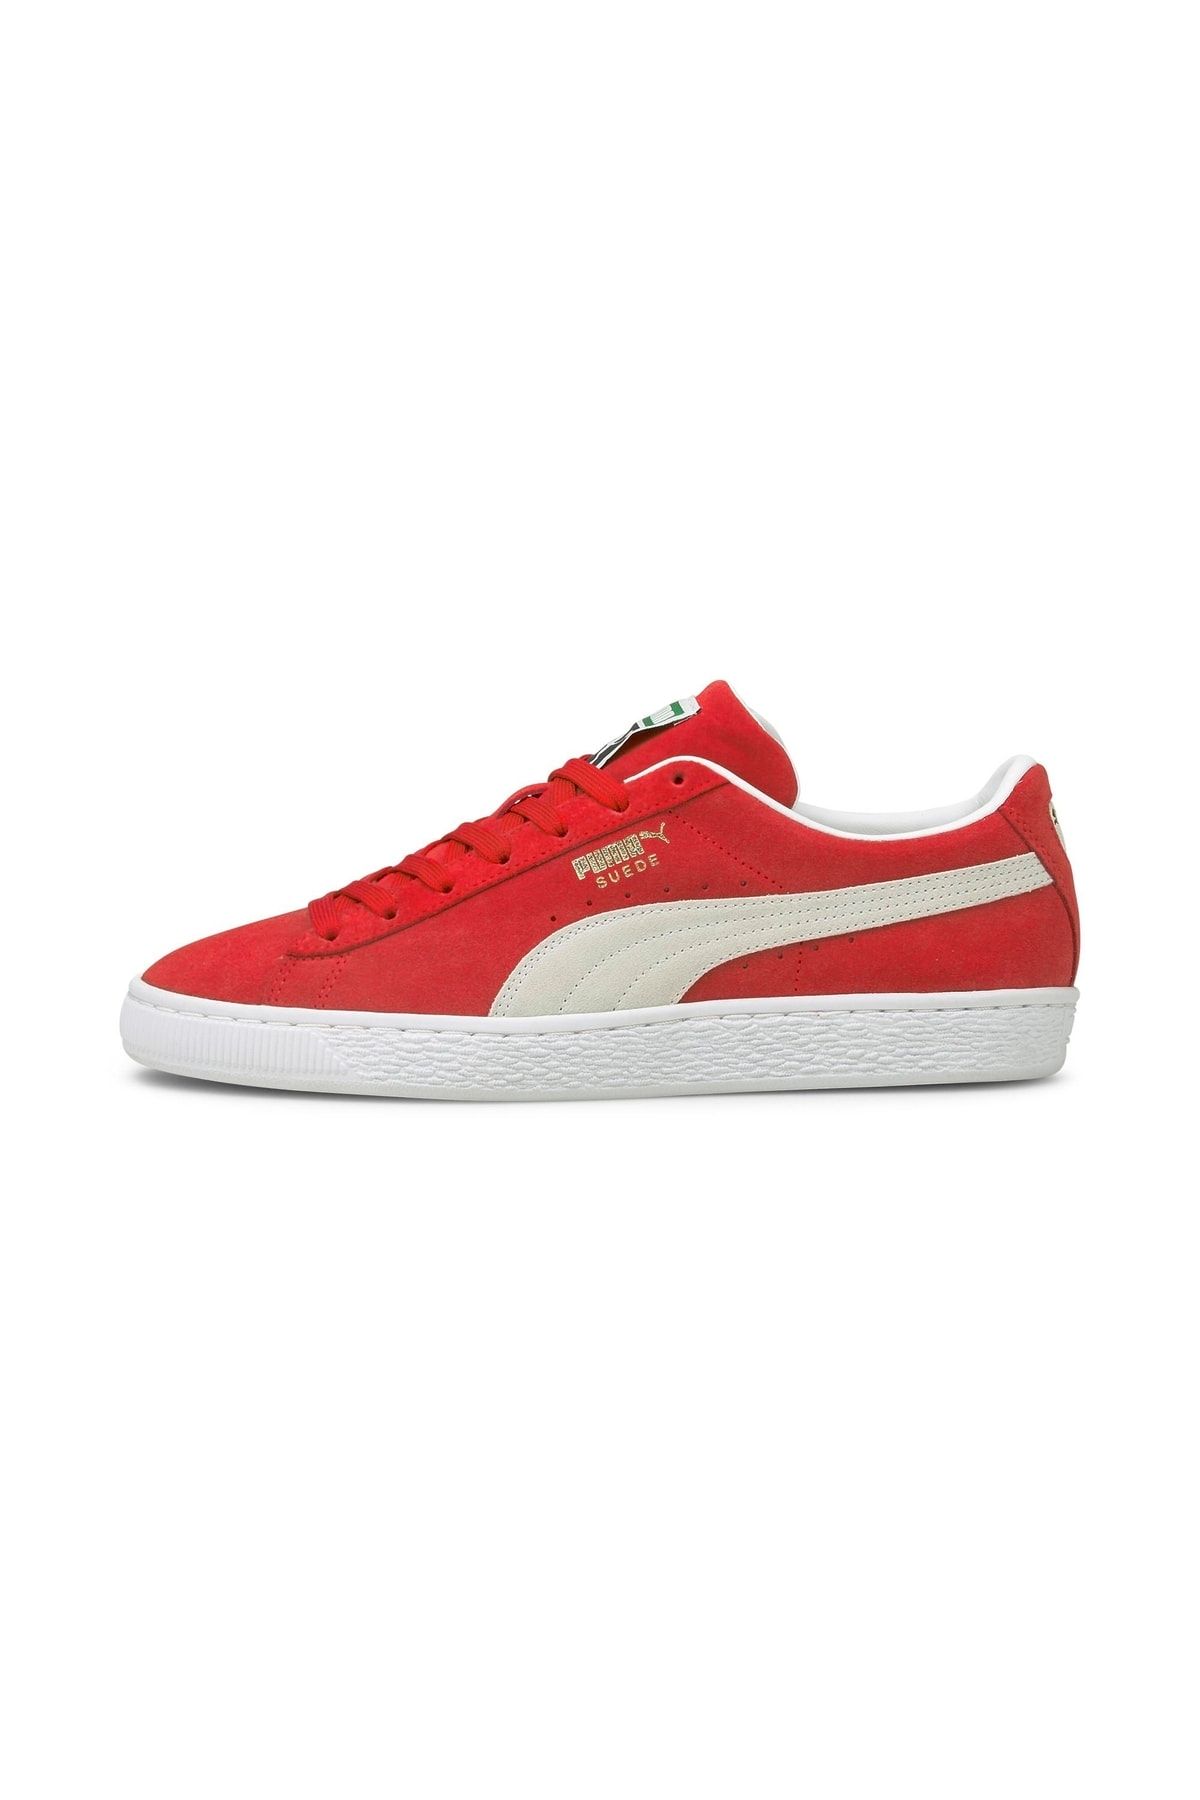 Puma Suede Classic Xxı Kırmızı Erkek Günlük Spor Ayakkabı